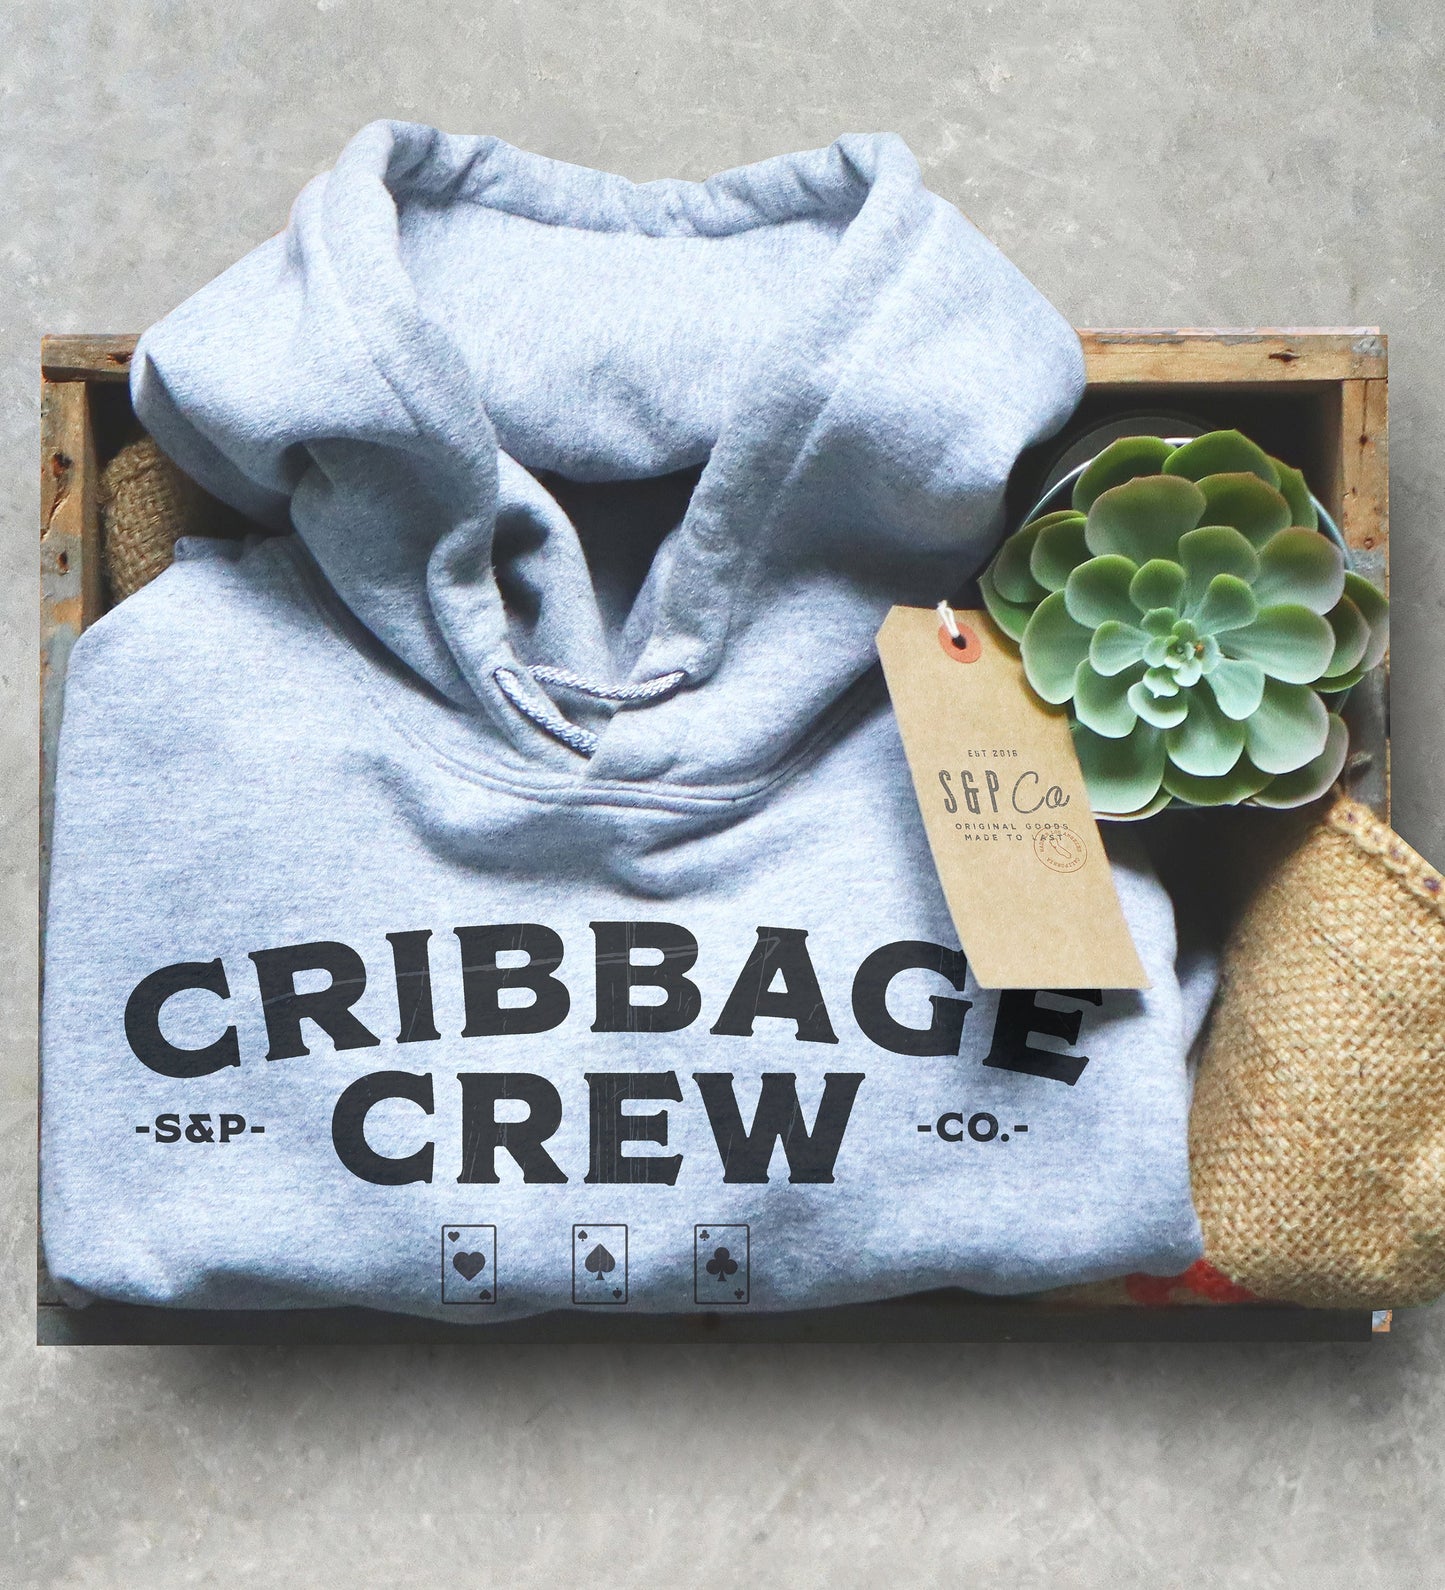 Cribbage Crew Unisex Hoodie - Cribbage Shirt, Tournament Shirt, Cribbage Team Shirts, Cribbage Master Shirt, Cribbage Lover Gift, Dad Shirt